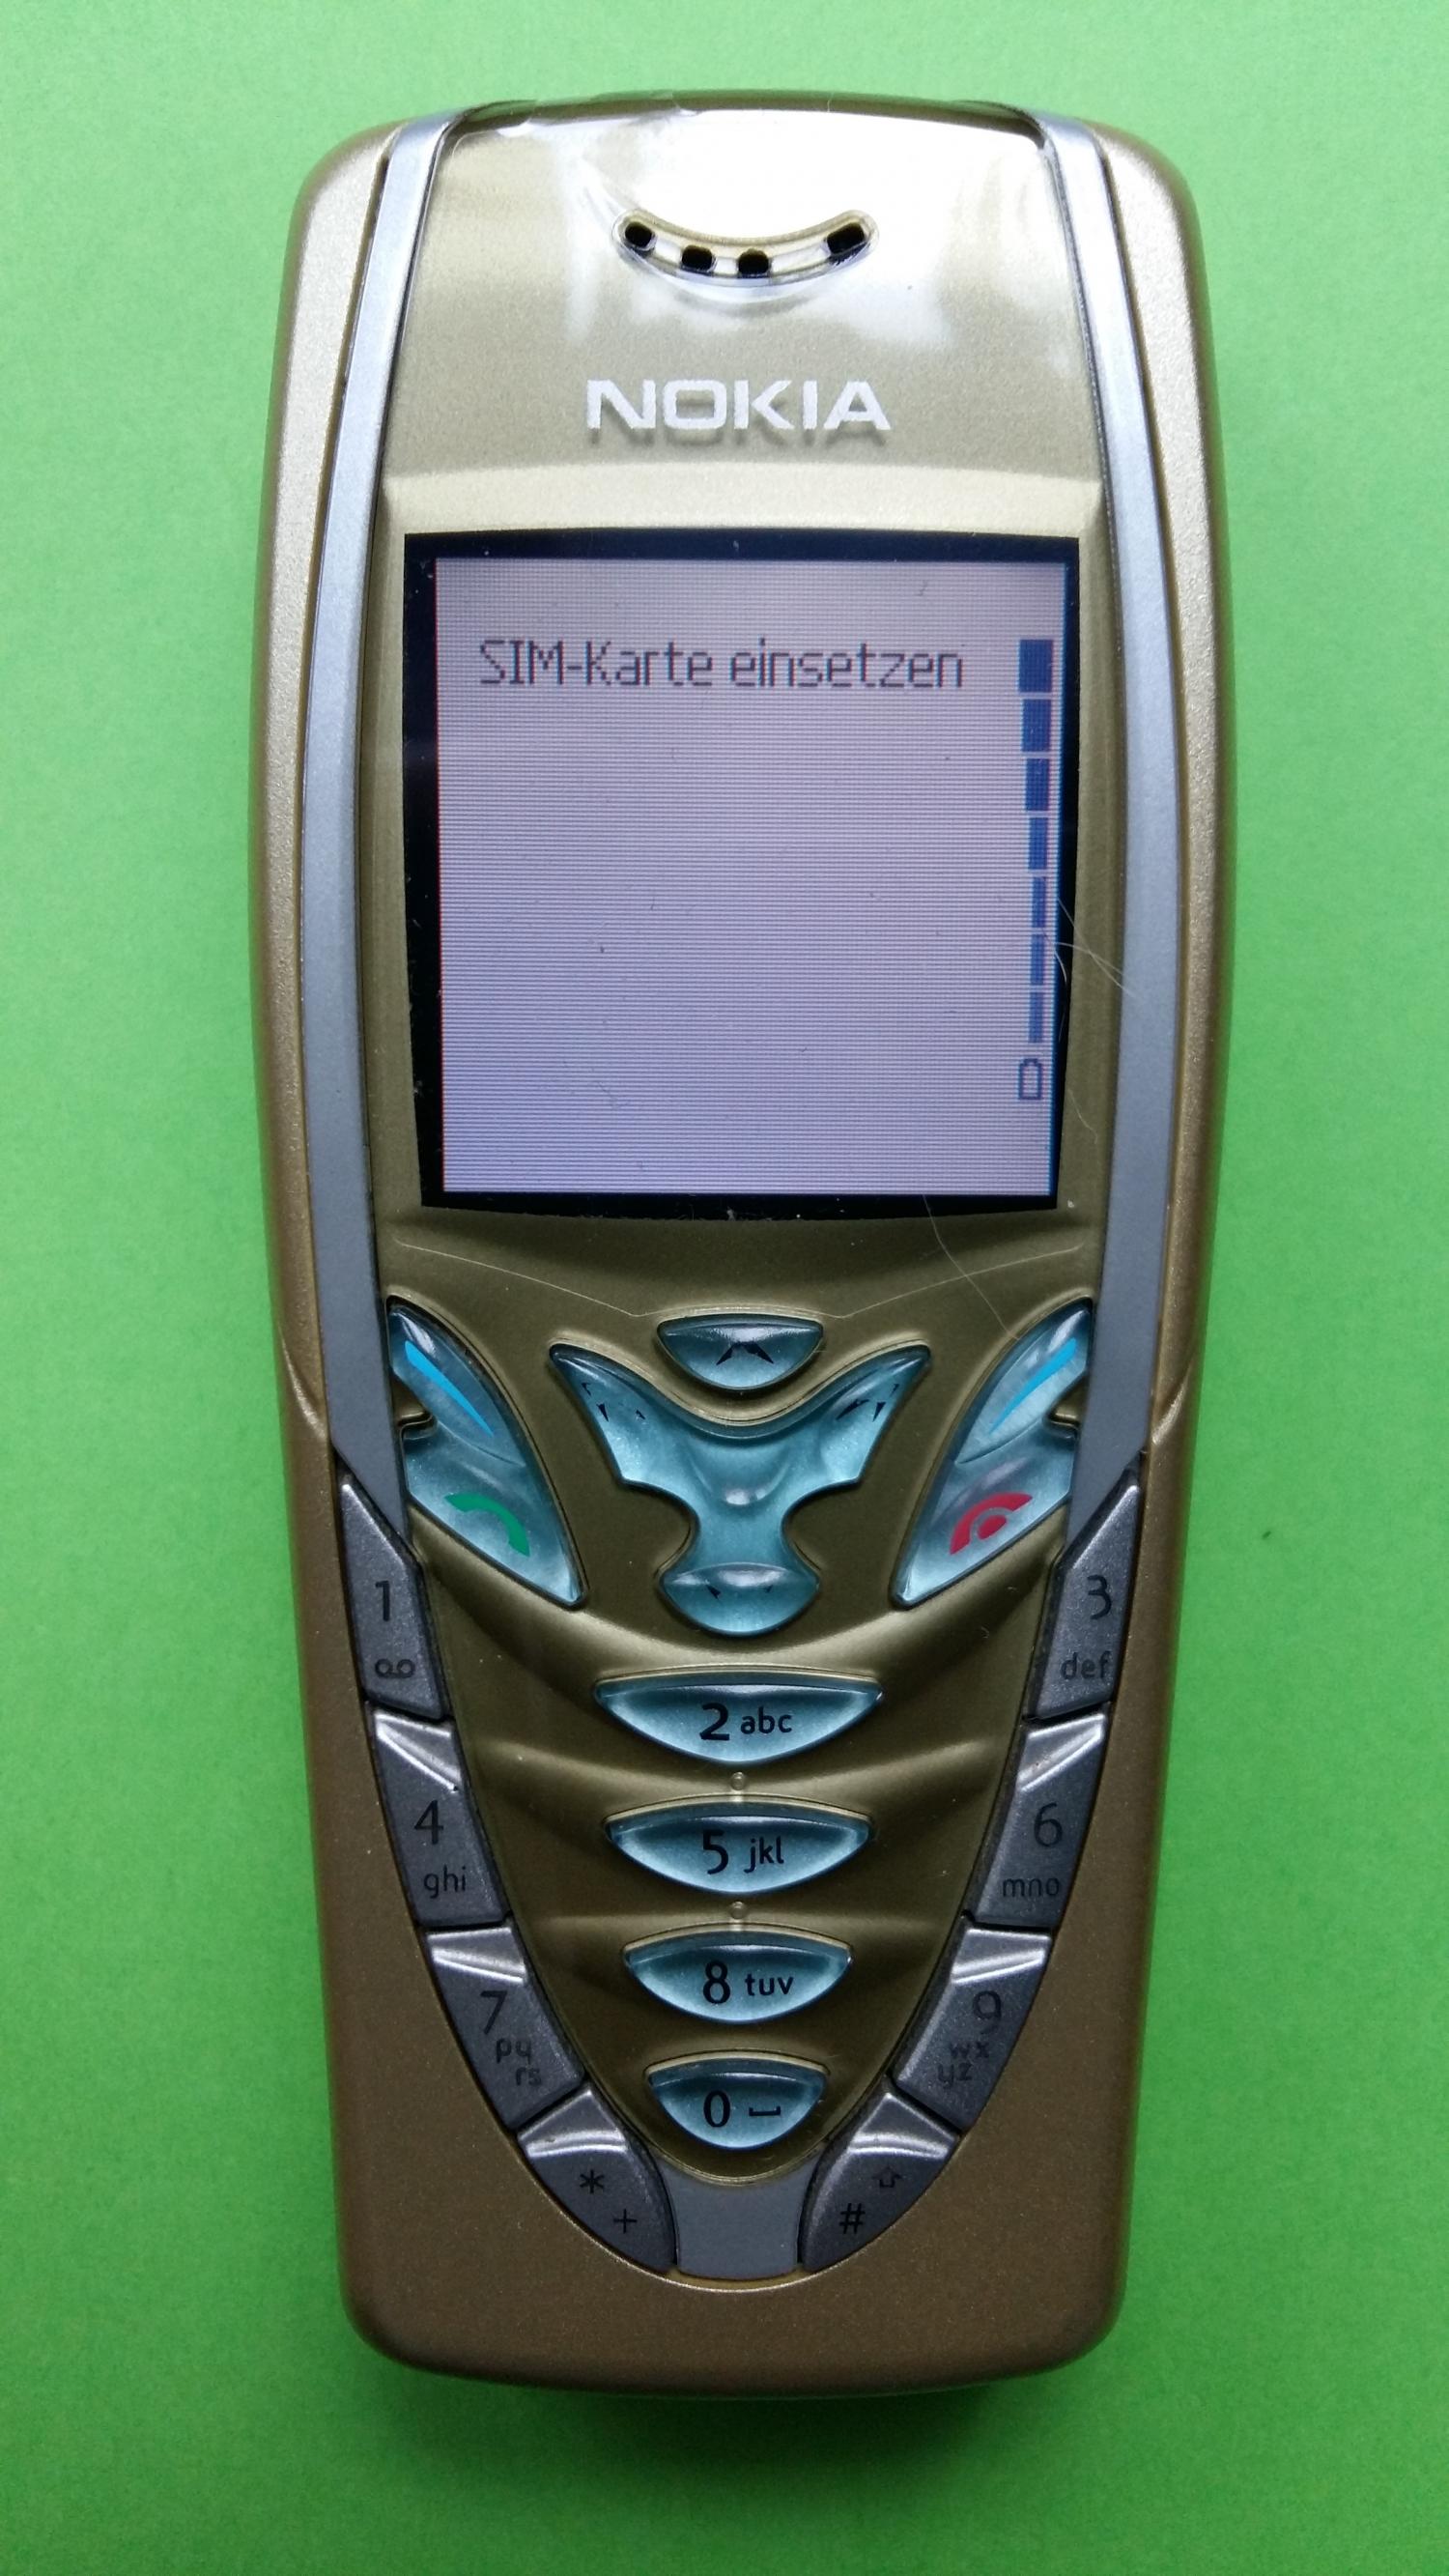 image-7307418-Nokia 7210 (3)1.jpg